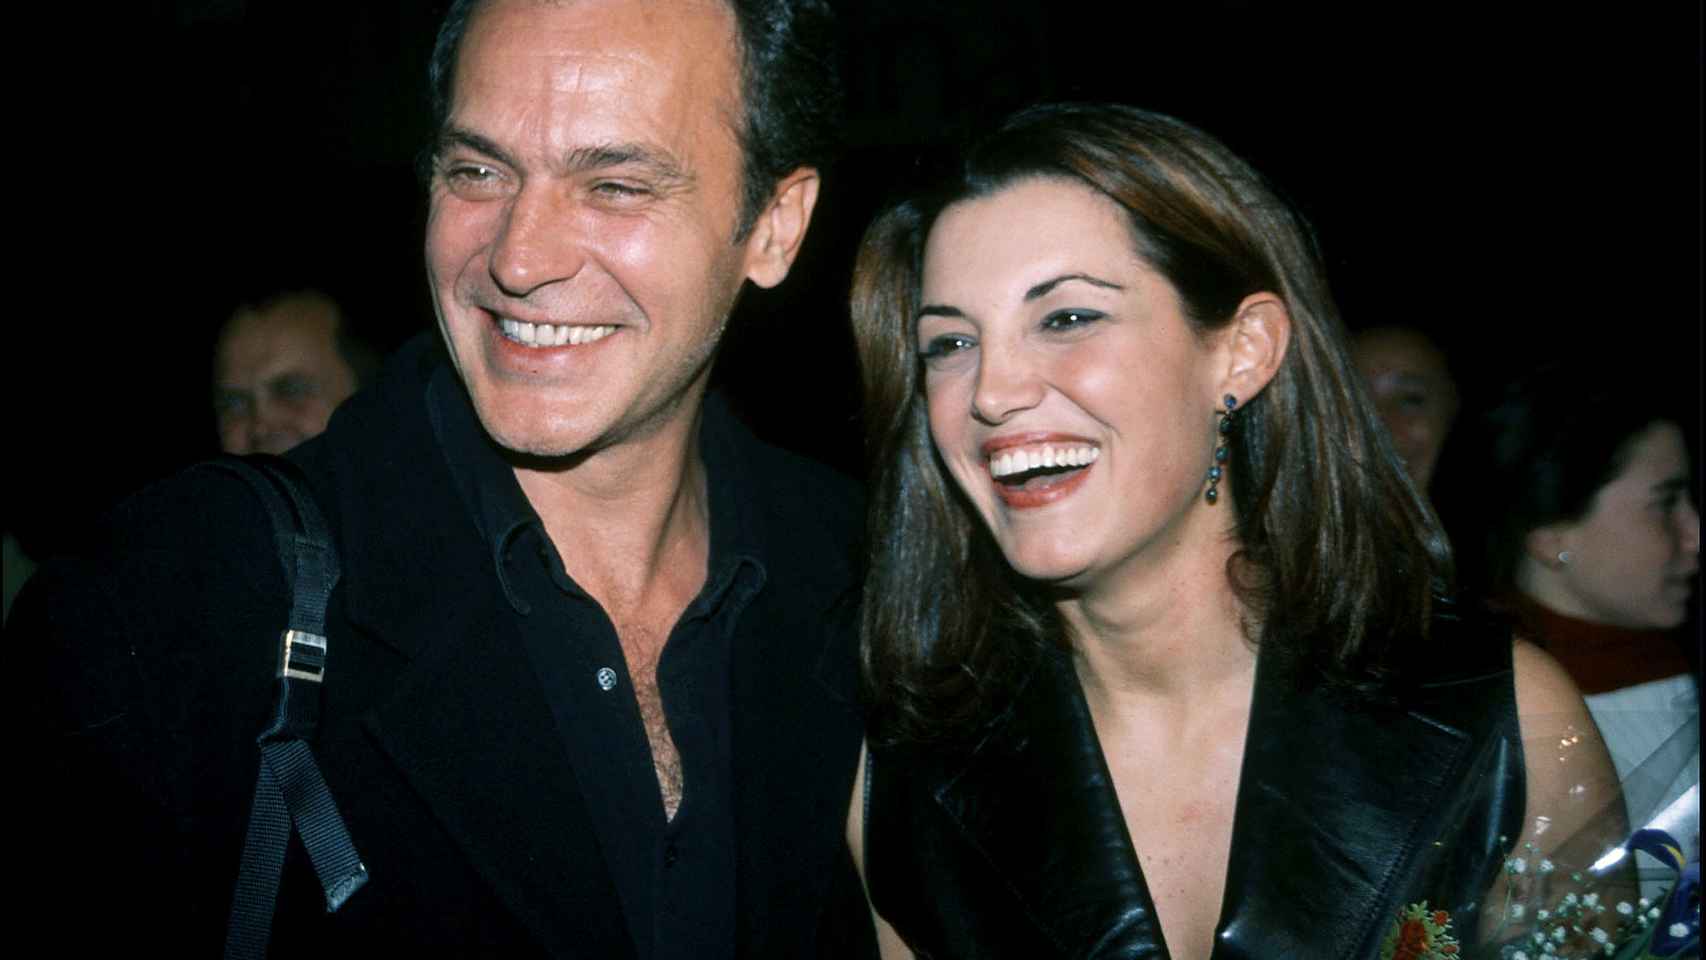 José Coronado y Mónica Molina en una imagen fechada en noviembre de 2001.